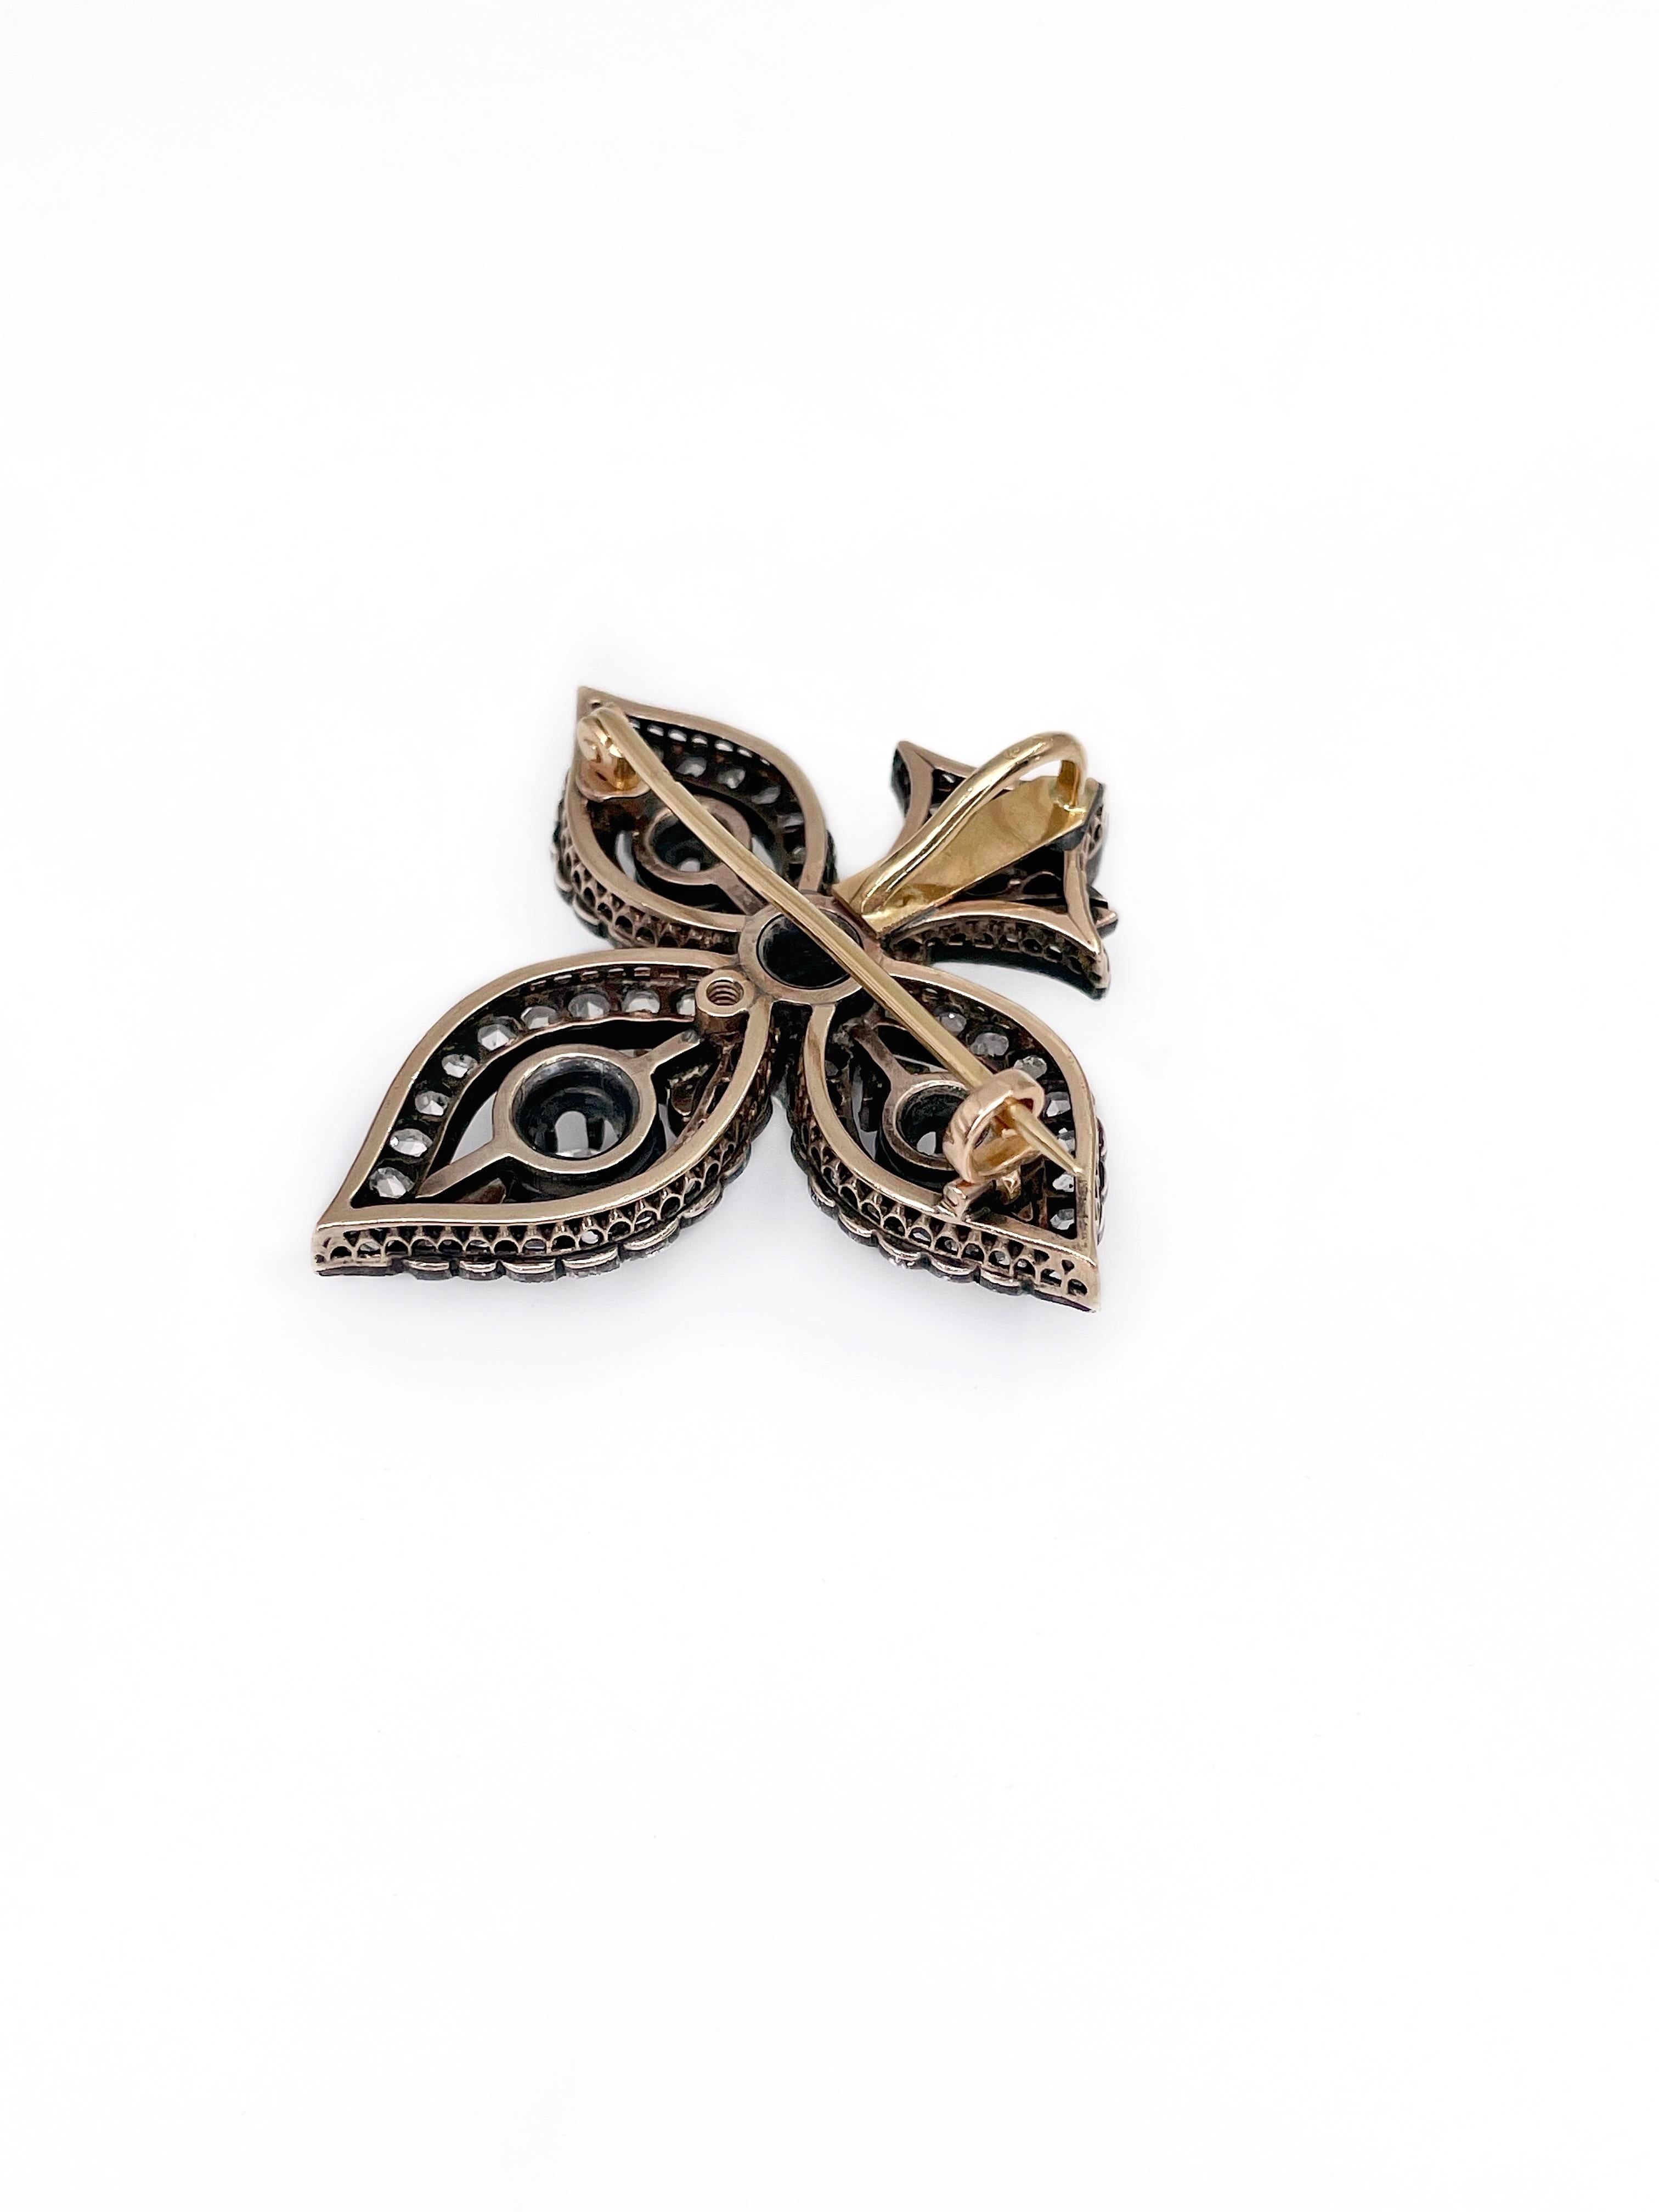 Old Mine Cut Antique 14K Gold “Fleur-de-lis” Diamond Brooch Pendant XIX Century